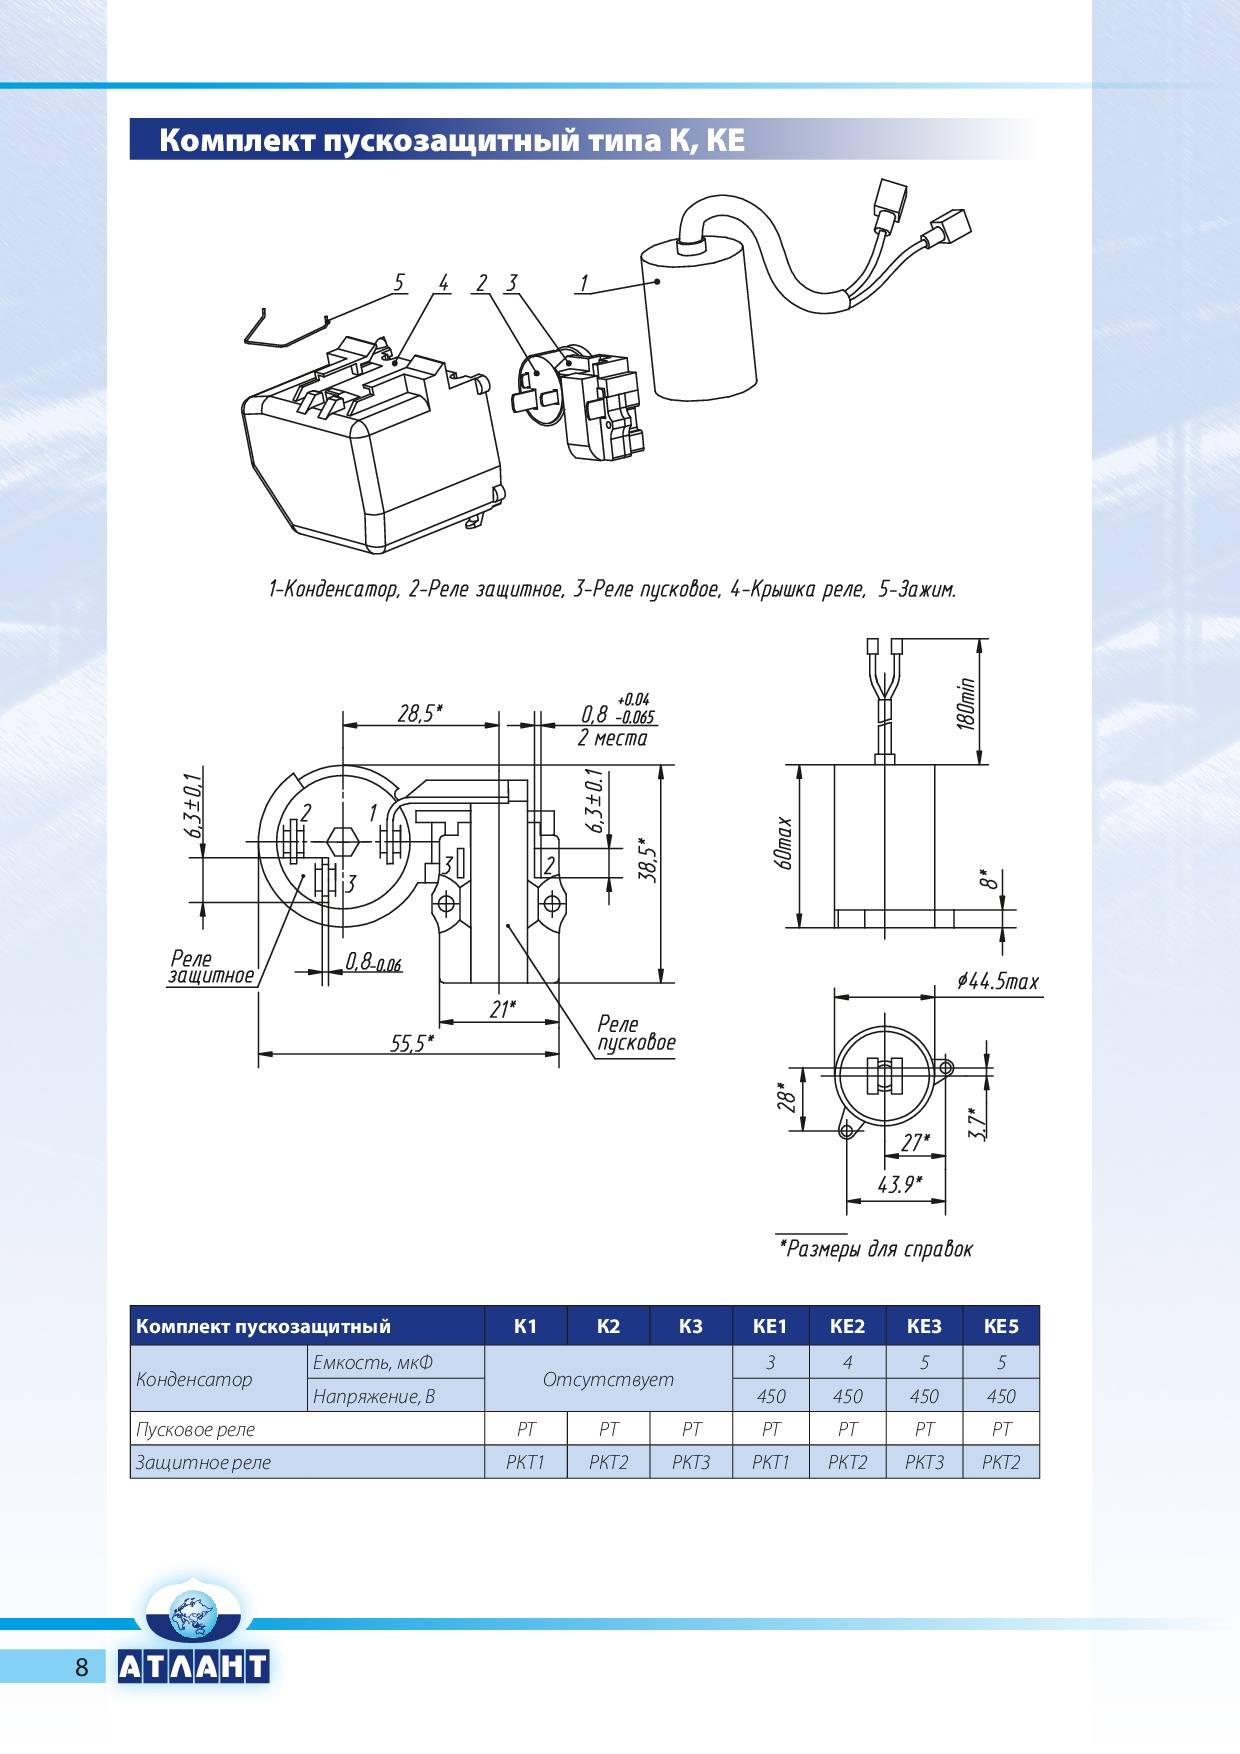 Схема подключения компрессора холодильника: возможные неисправности, демонтаж и замена